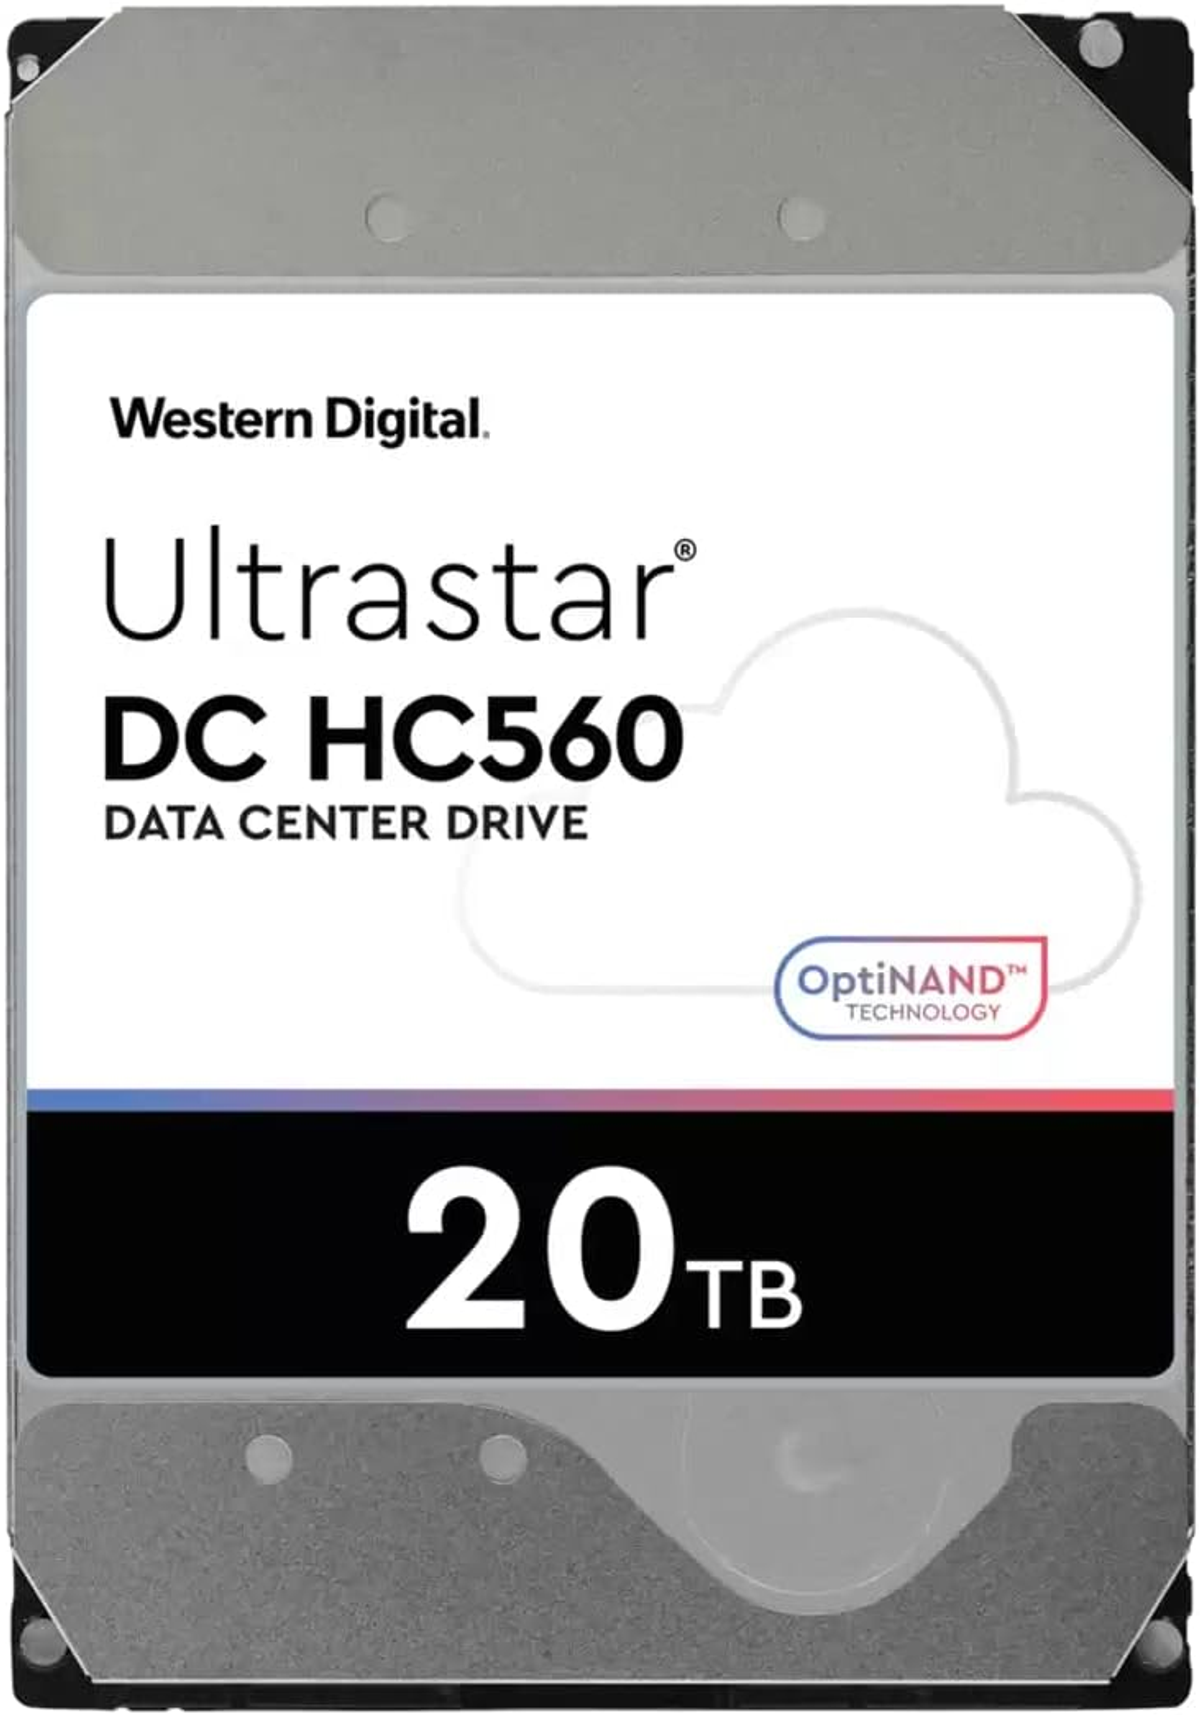 WESTERN DIGITAL 20TB WD intern 20 7200RPM 3,5 HDD, 512MB Zoll, DH Ultrastar TB, Ent., HC560